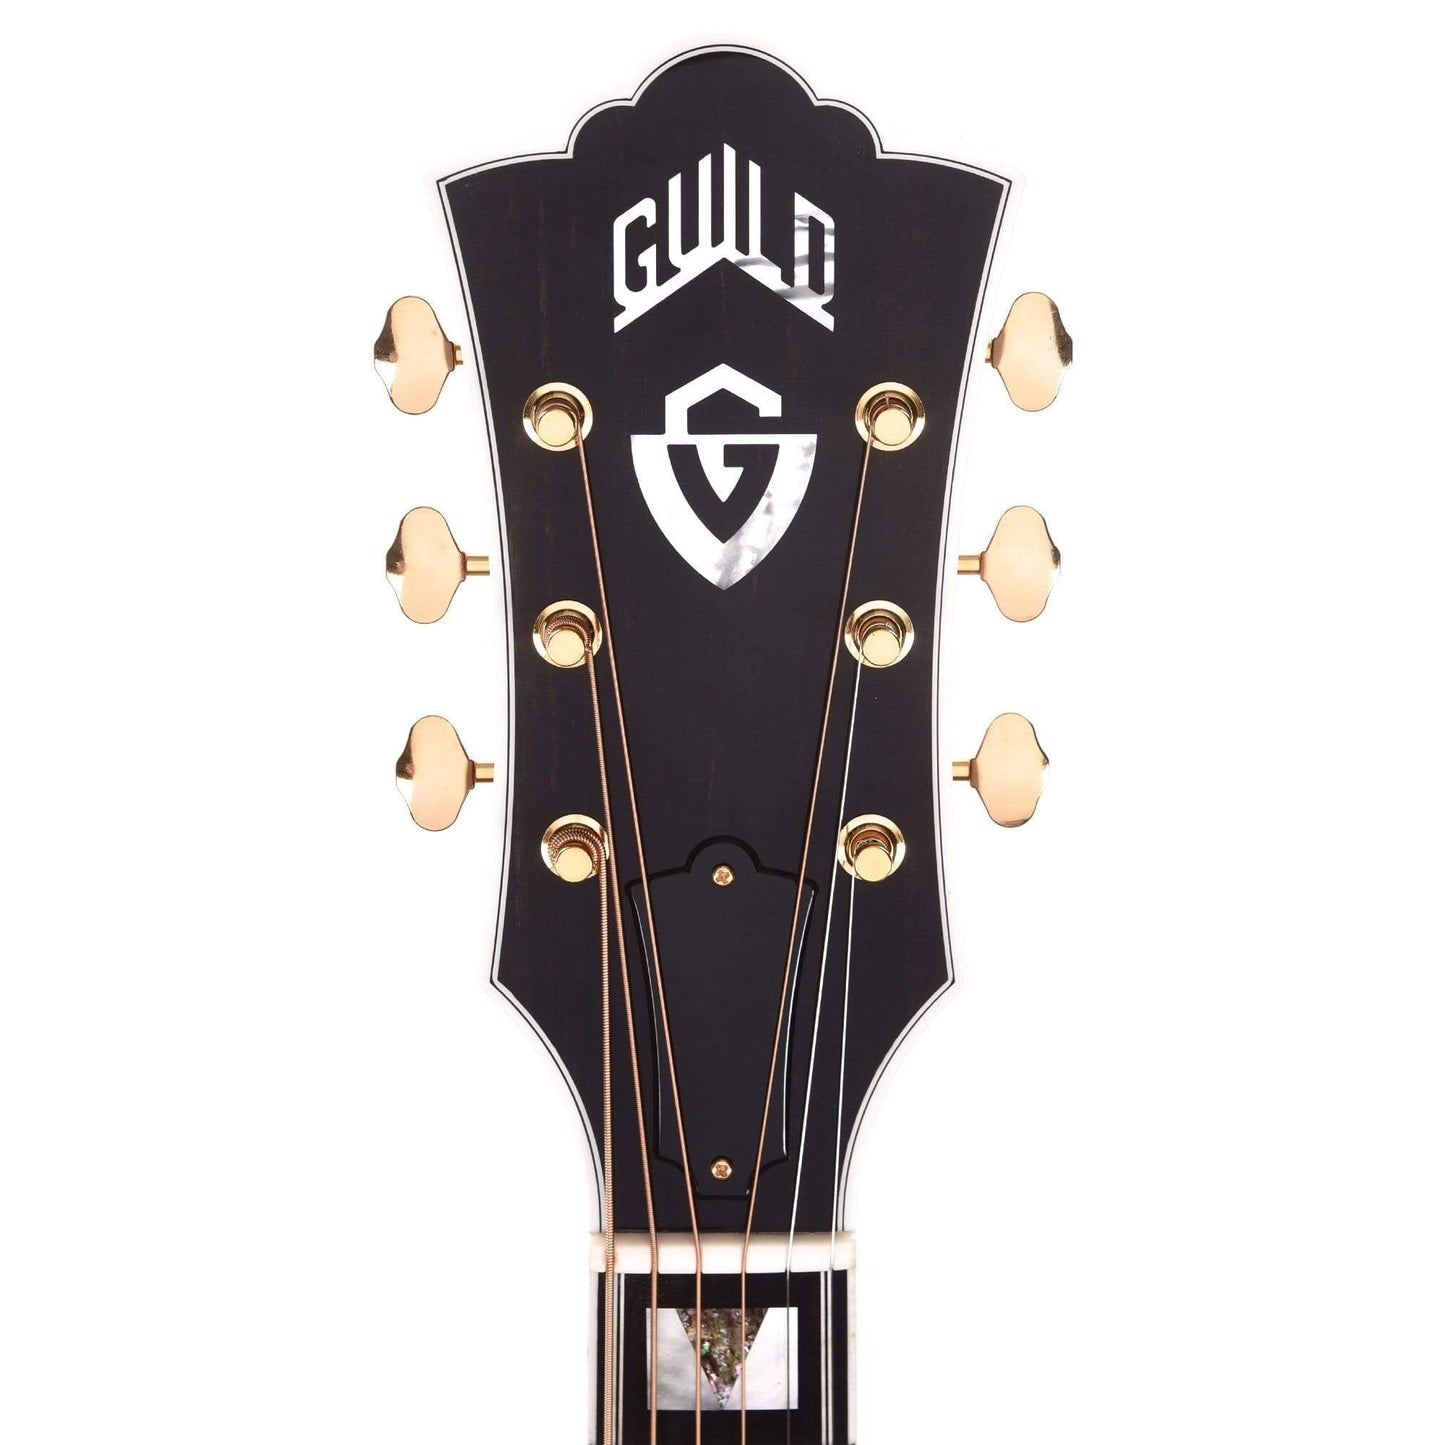 Guild F-55 Maple Antique Sunburst Acoustic Guitars / Jumbo